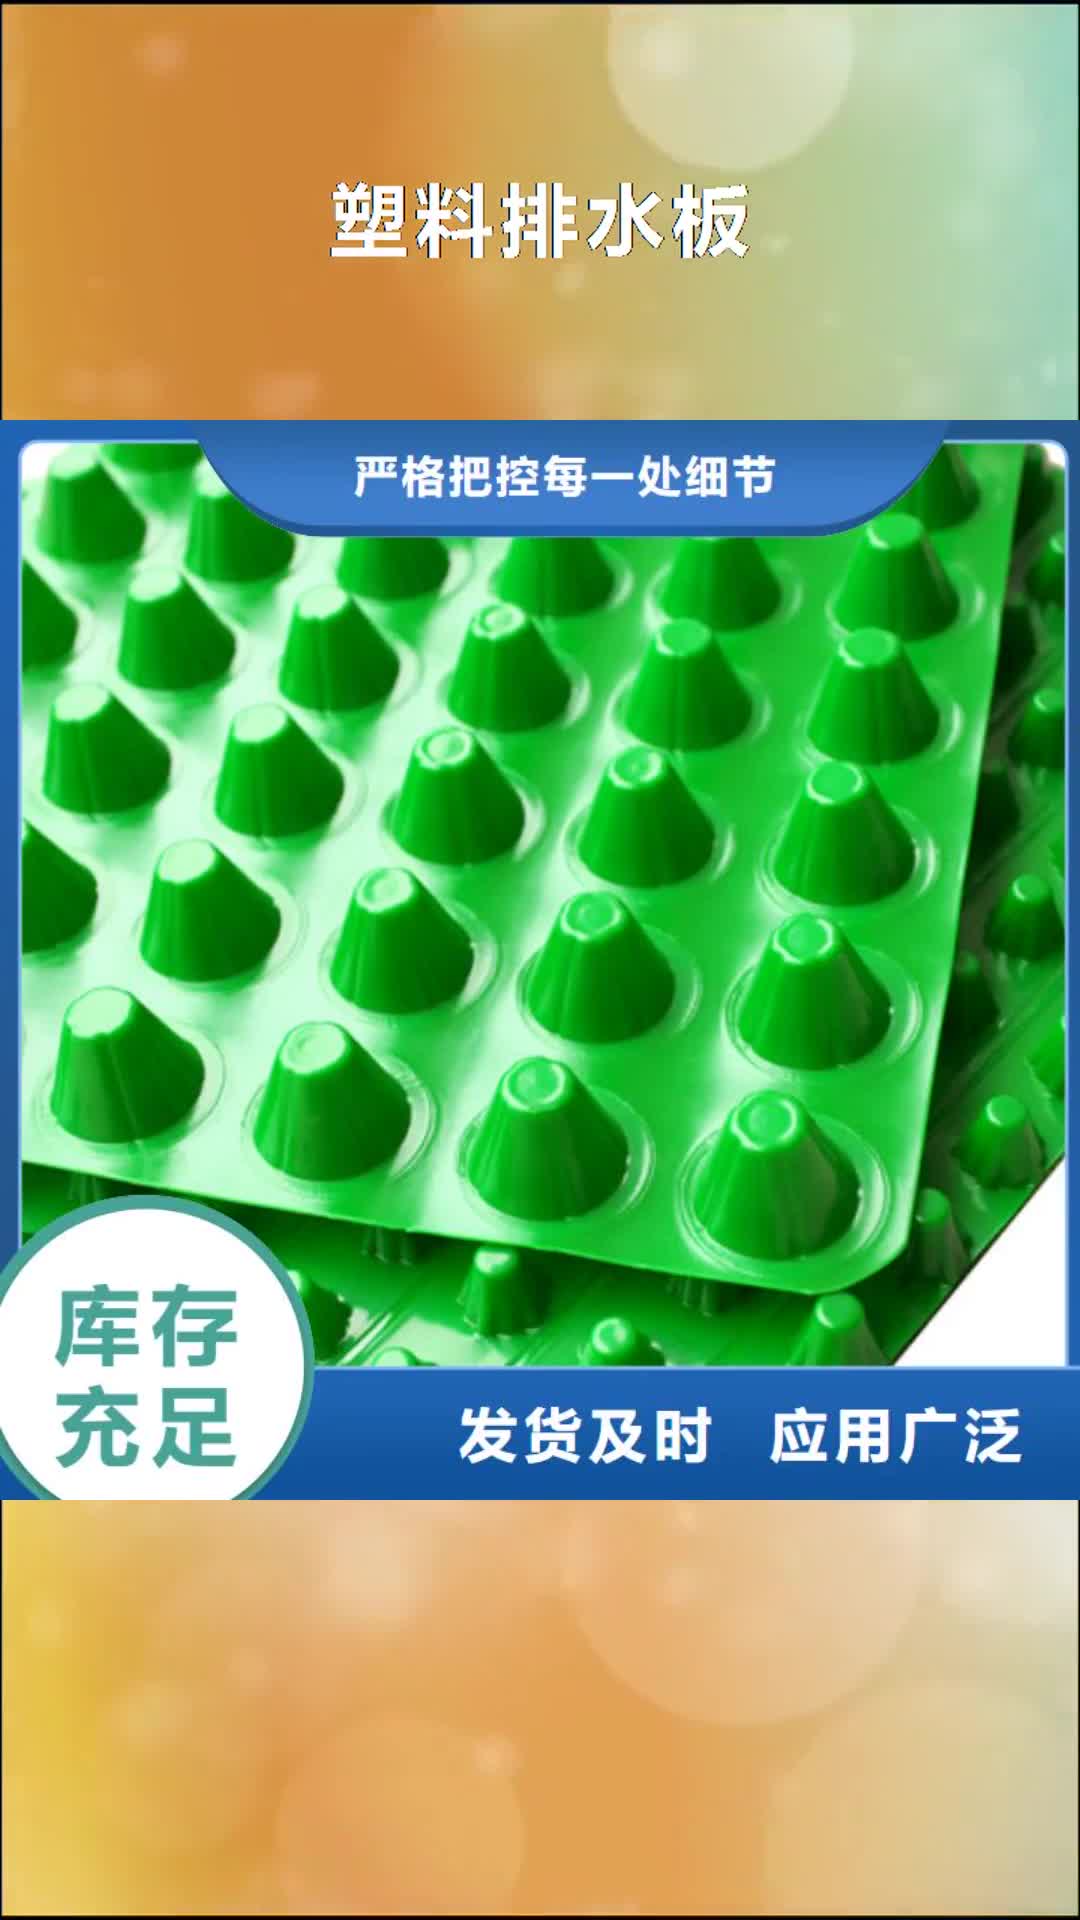 贵港【塑料排水板】-防护虹吸排水收集系统好品质用的放心